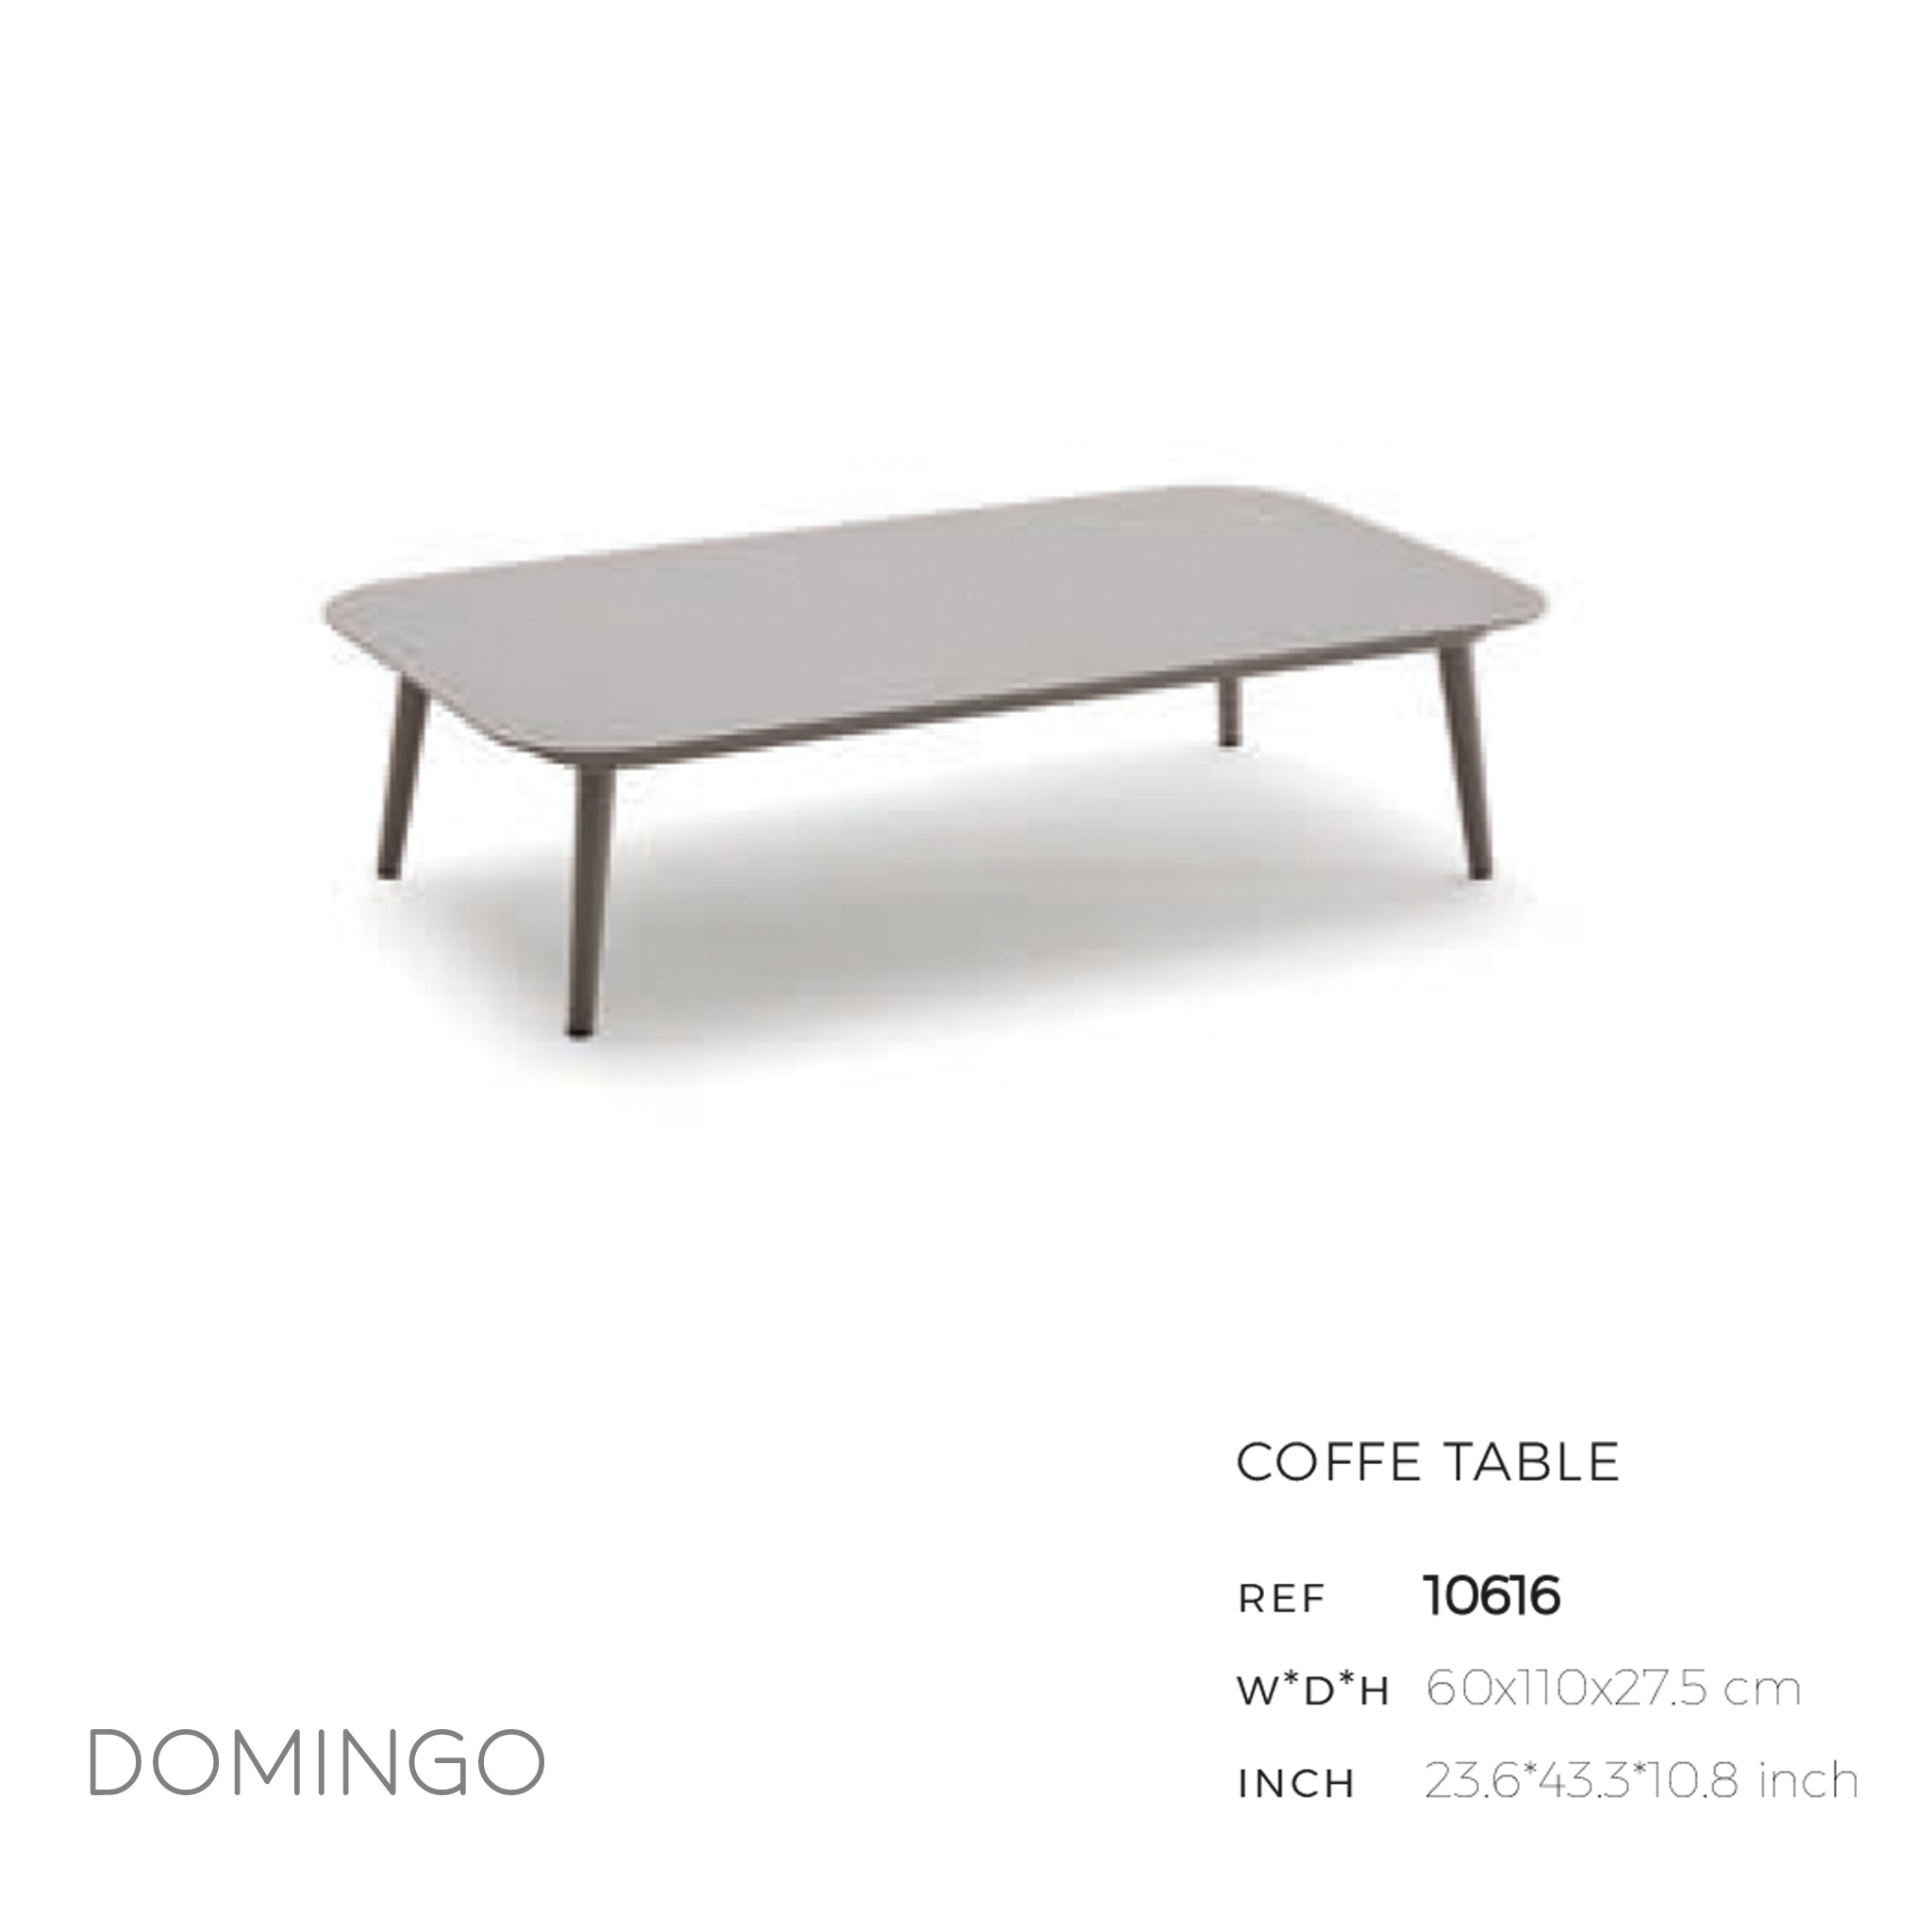 Domingo Coffee Table